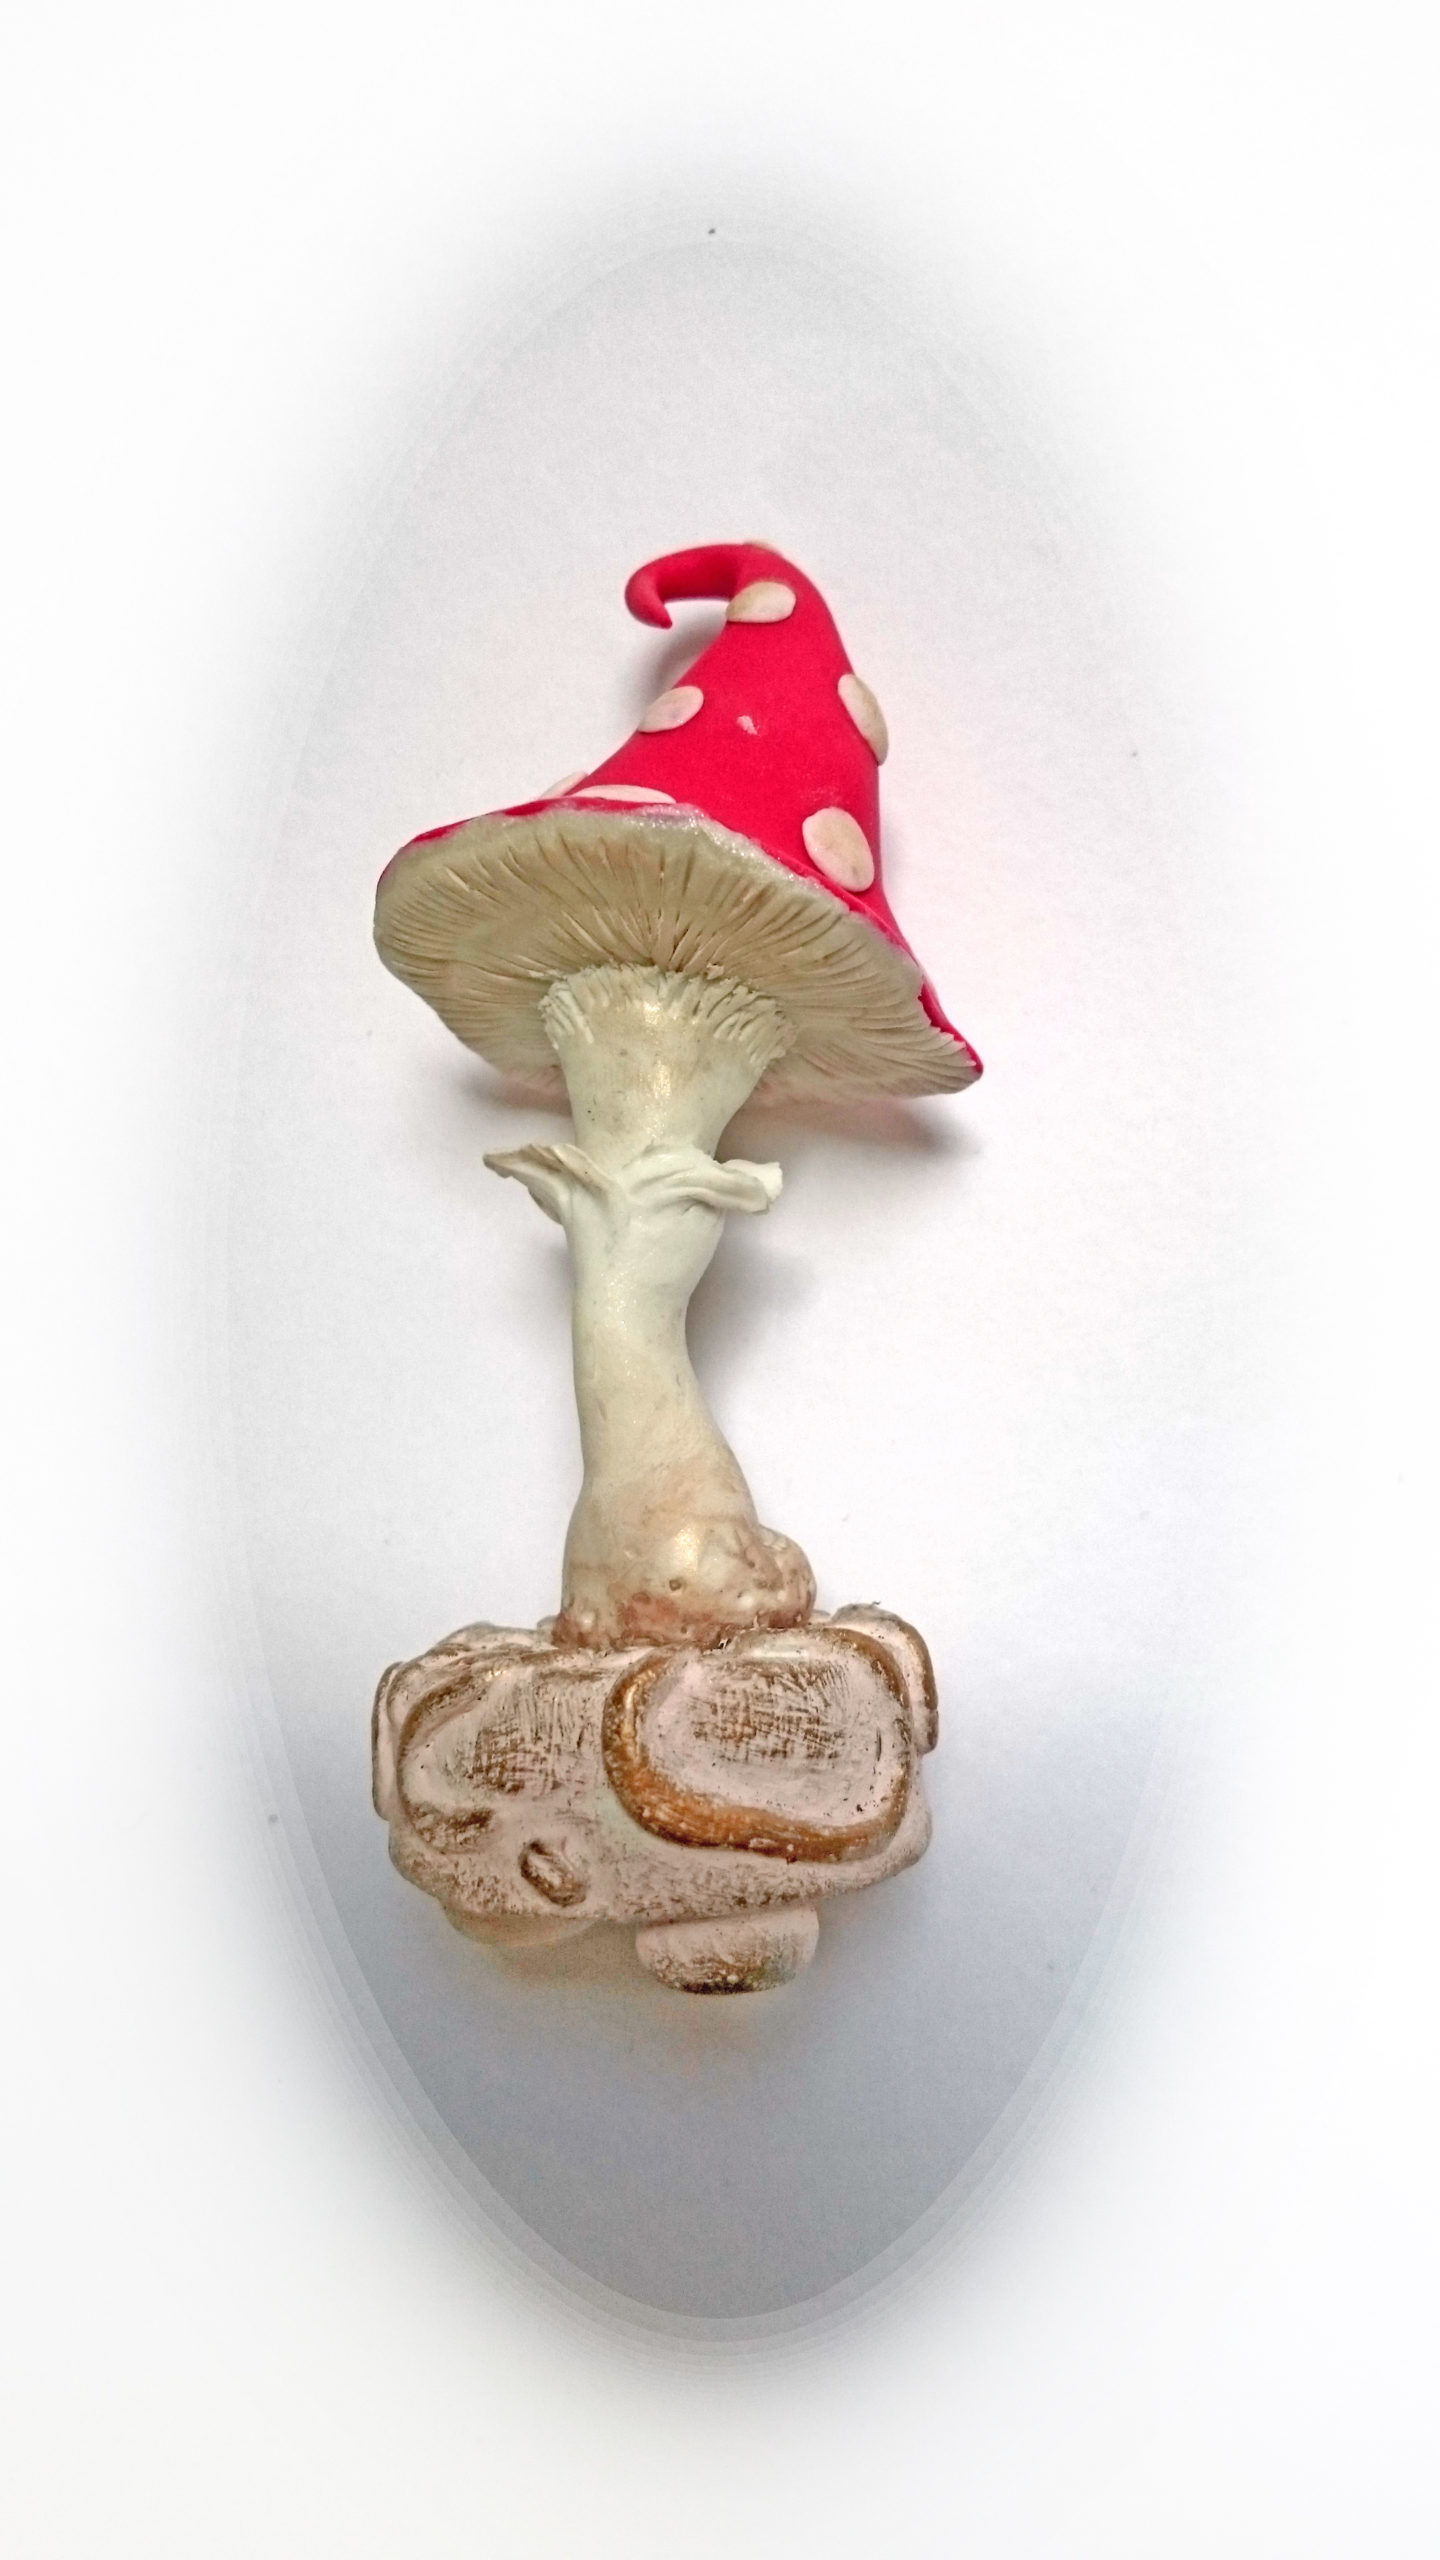 A mushroom from Wonderland